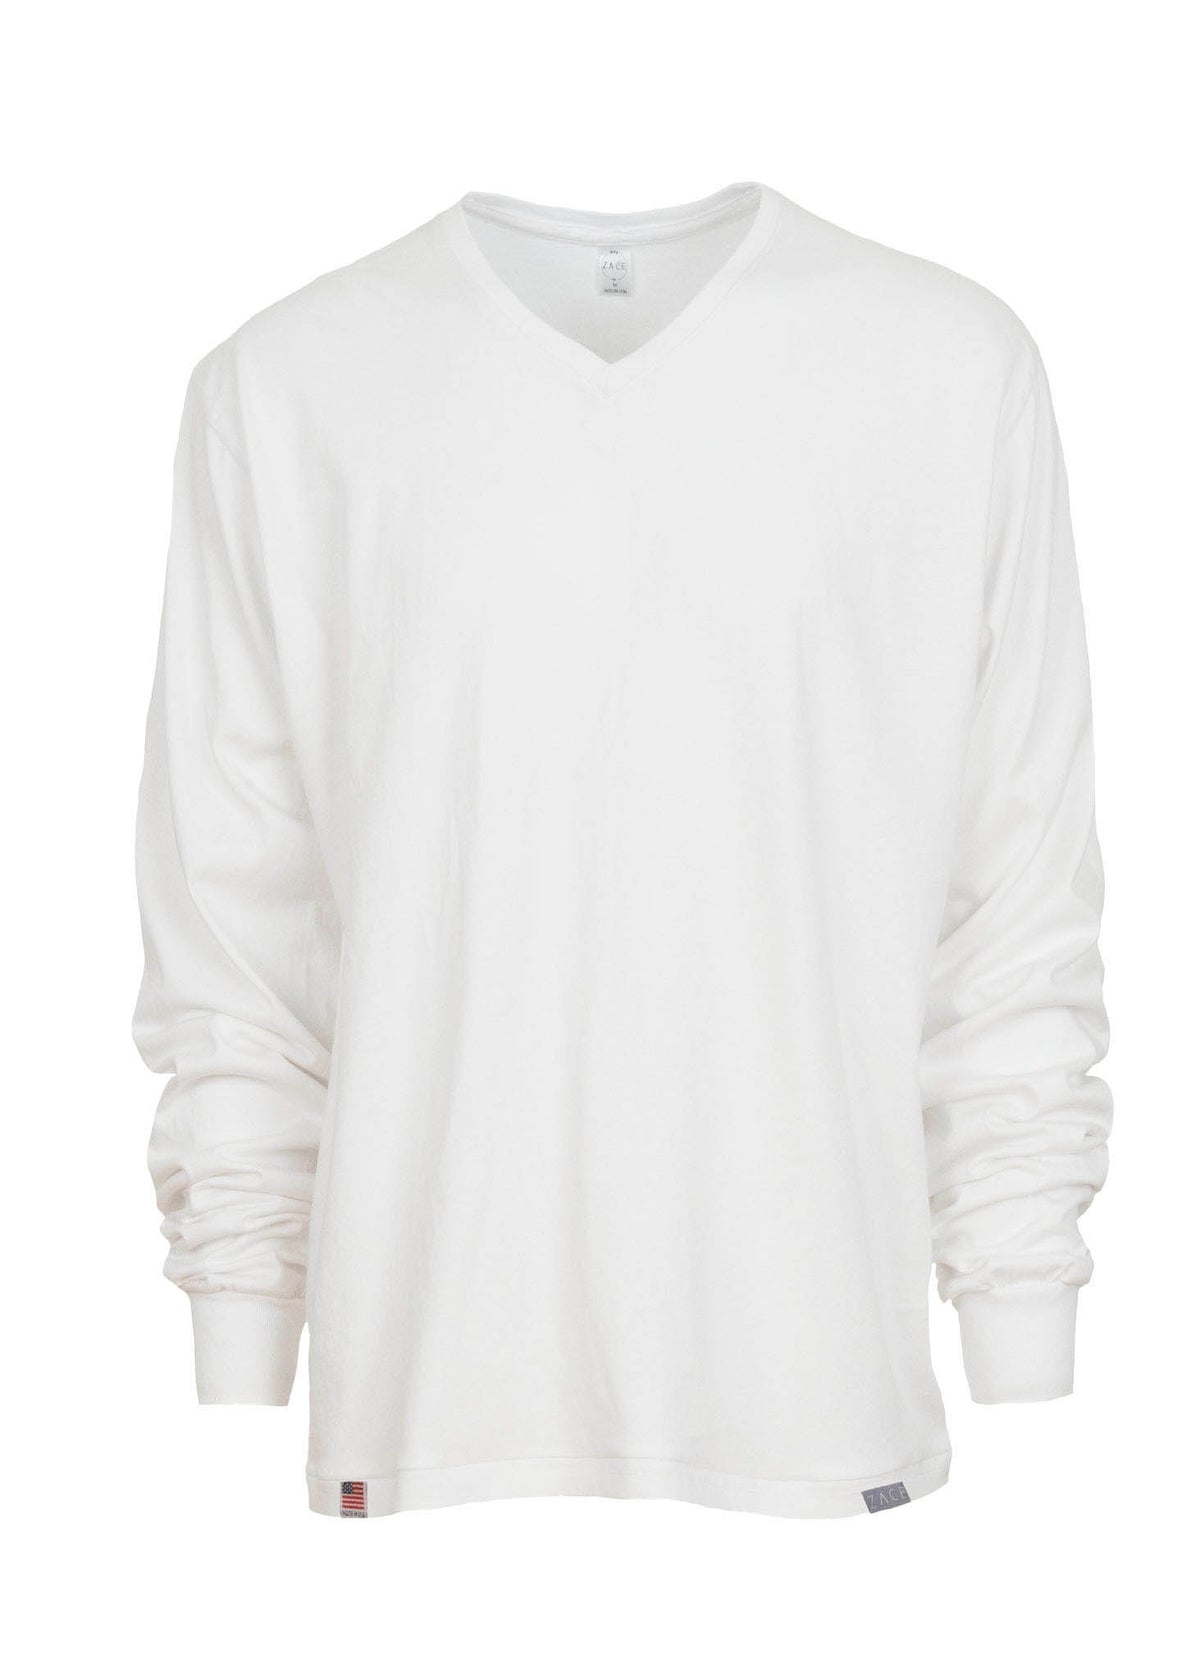 Long Sleeve V-Neck Work Tee Shirt White